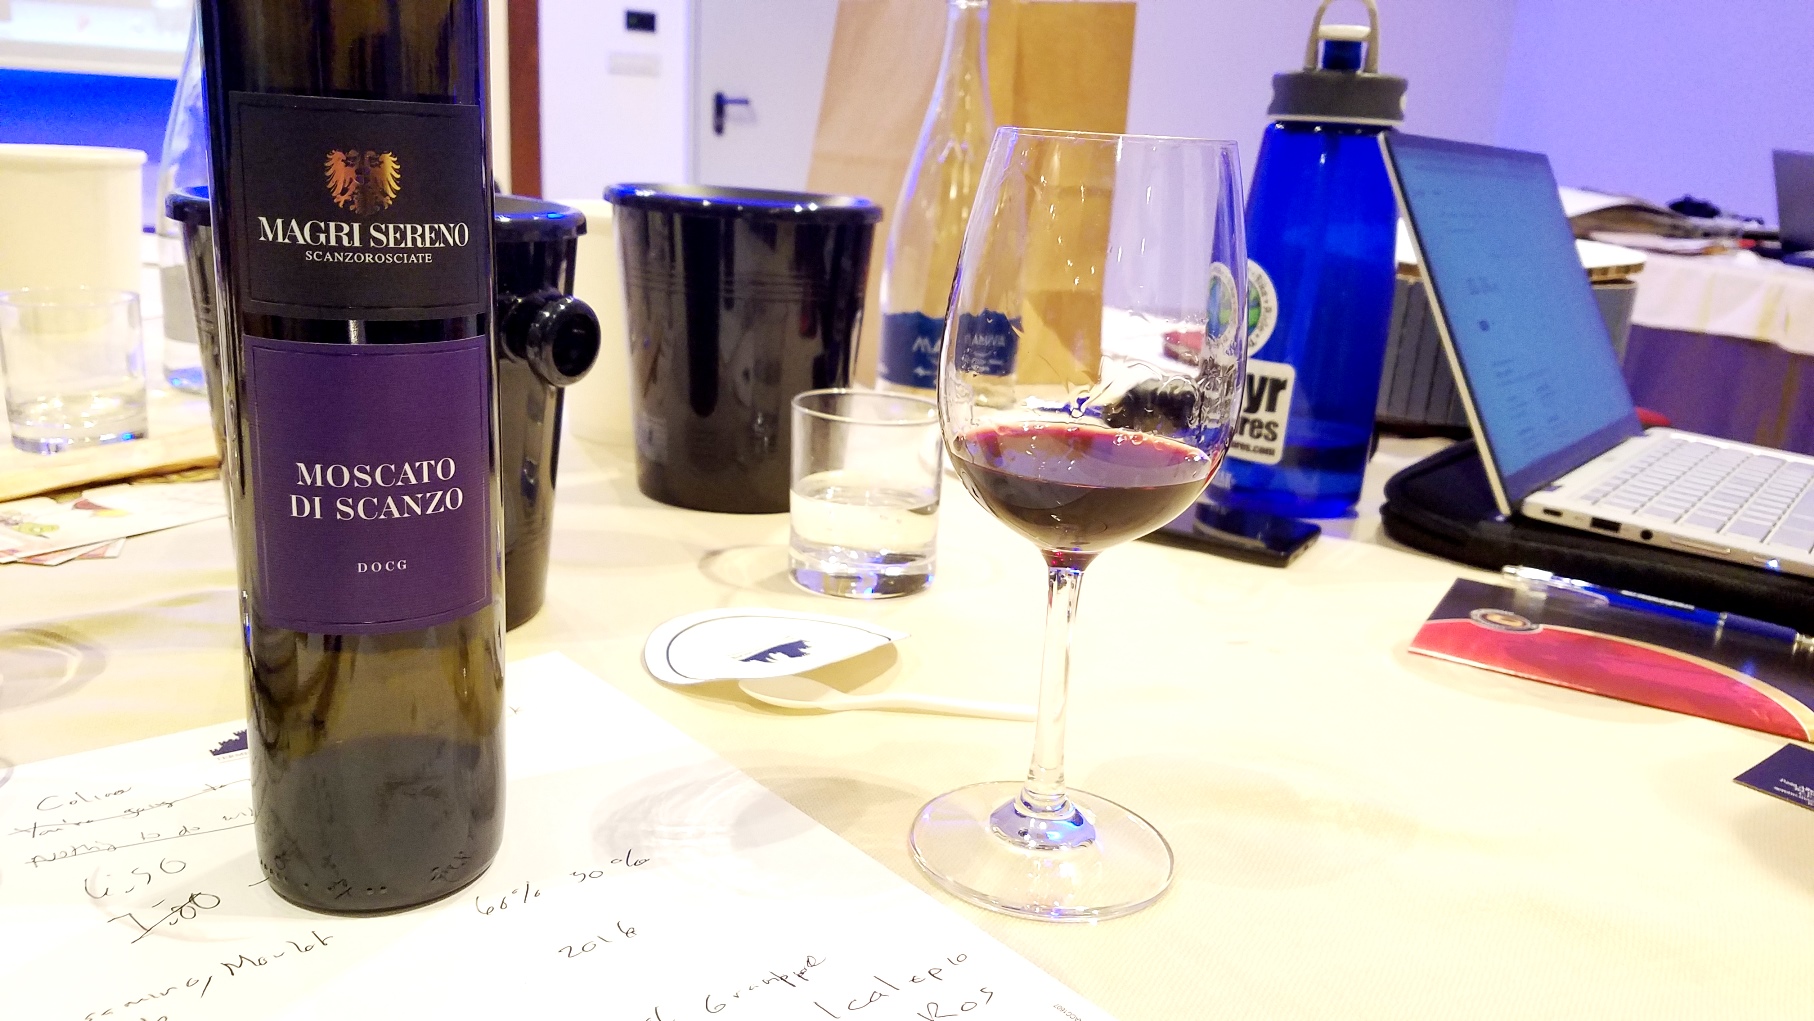 Magri Sereno Scanzorosciate, Moscato di Scanzo DOCG 2017, Lombardy, Italy, Wine Casual